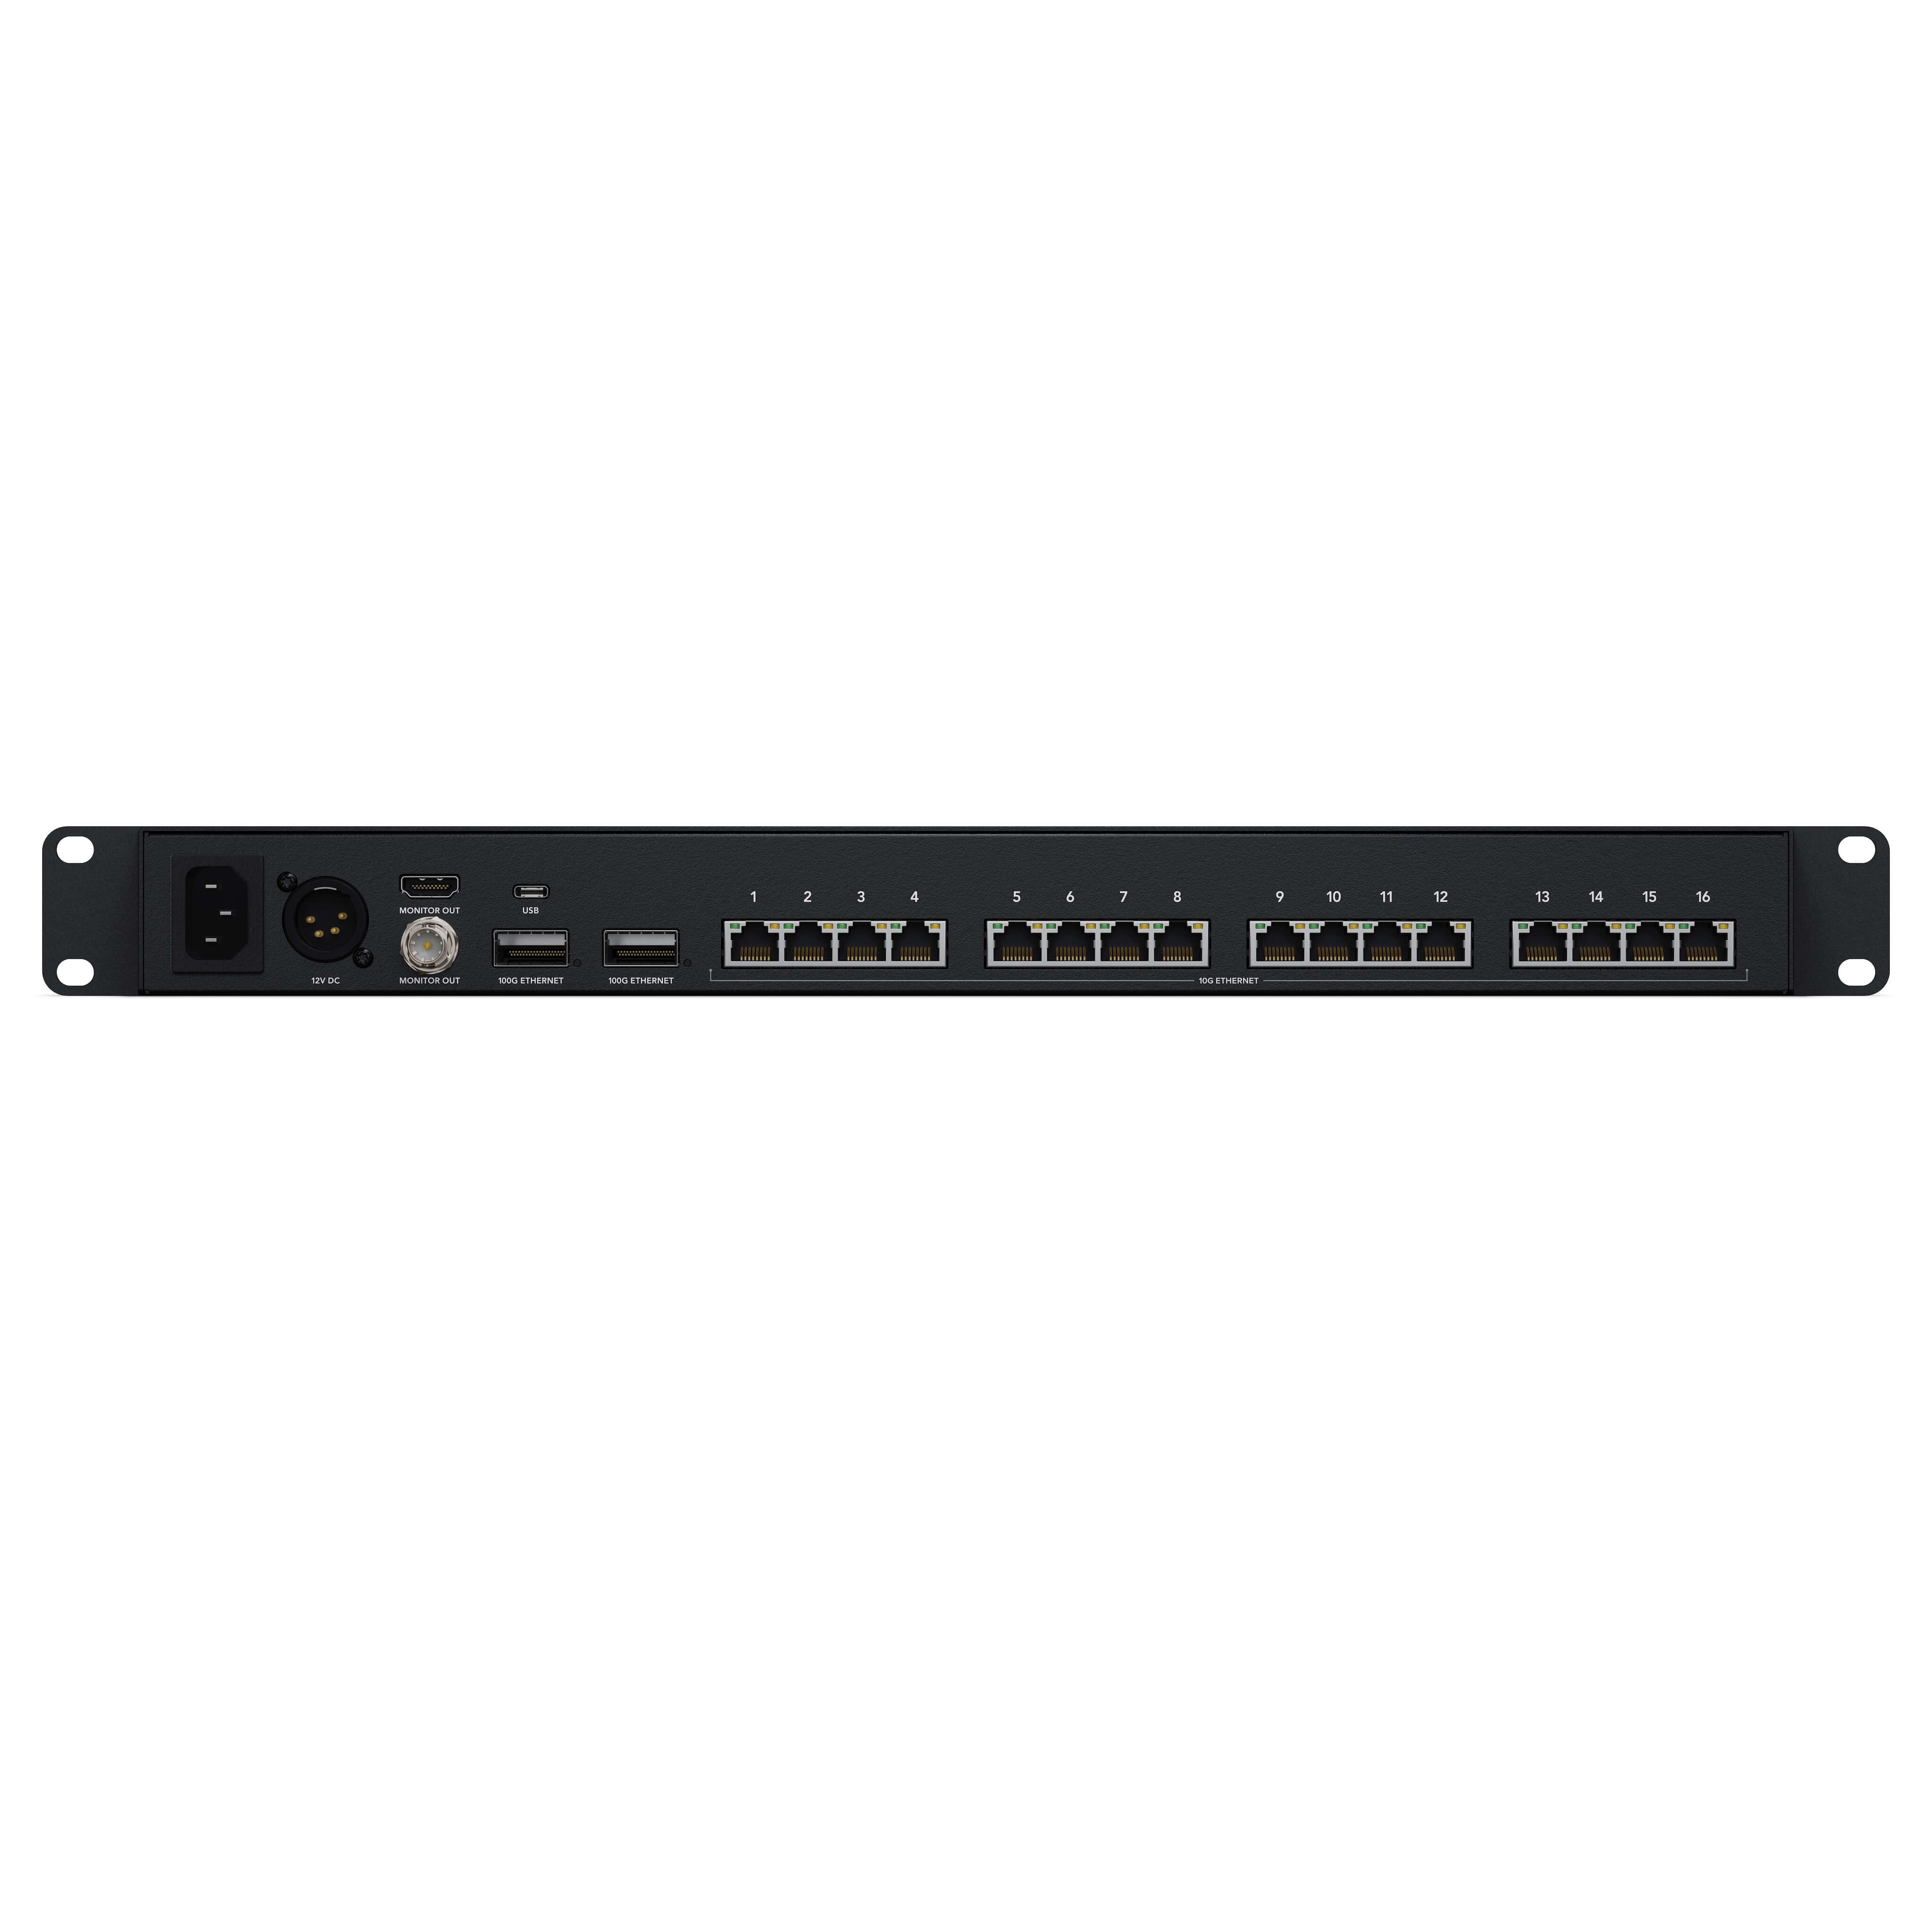 Blackmagic Design Ethernet Switch 360P, rear